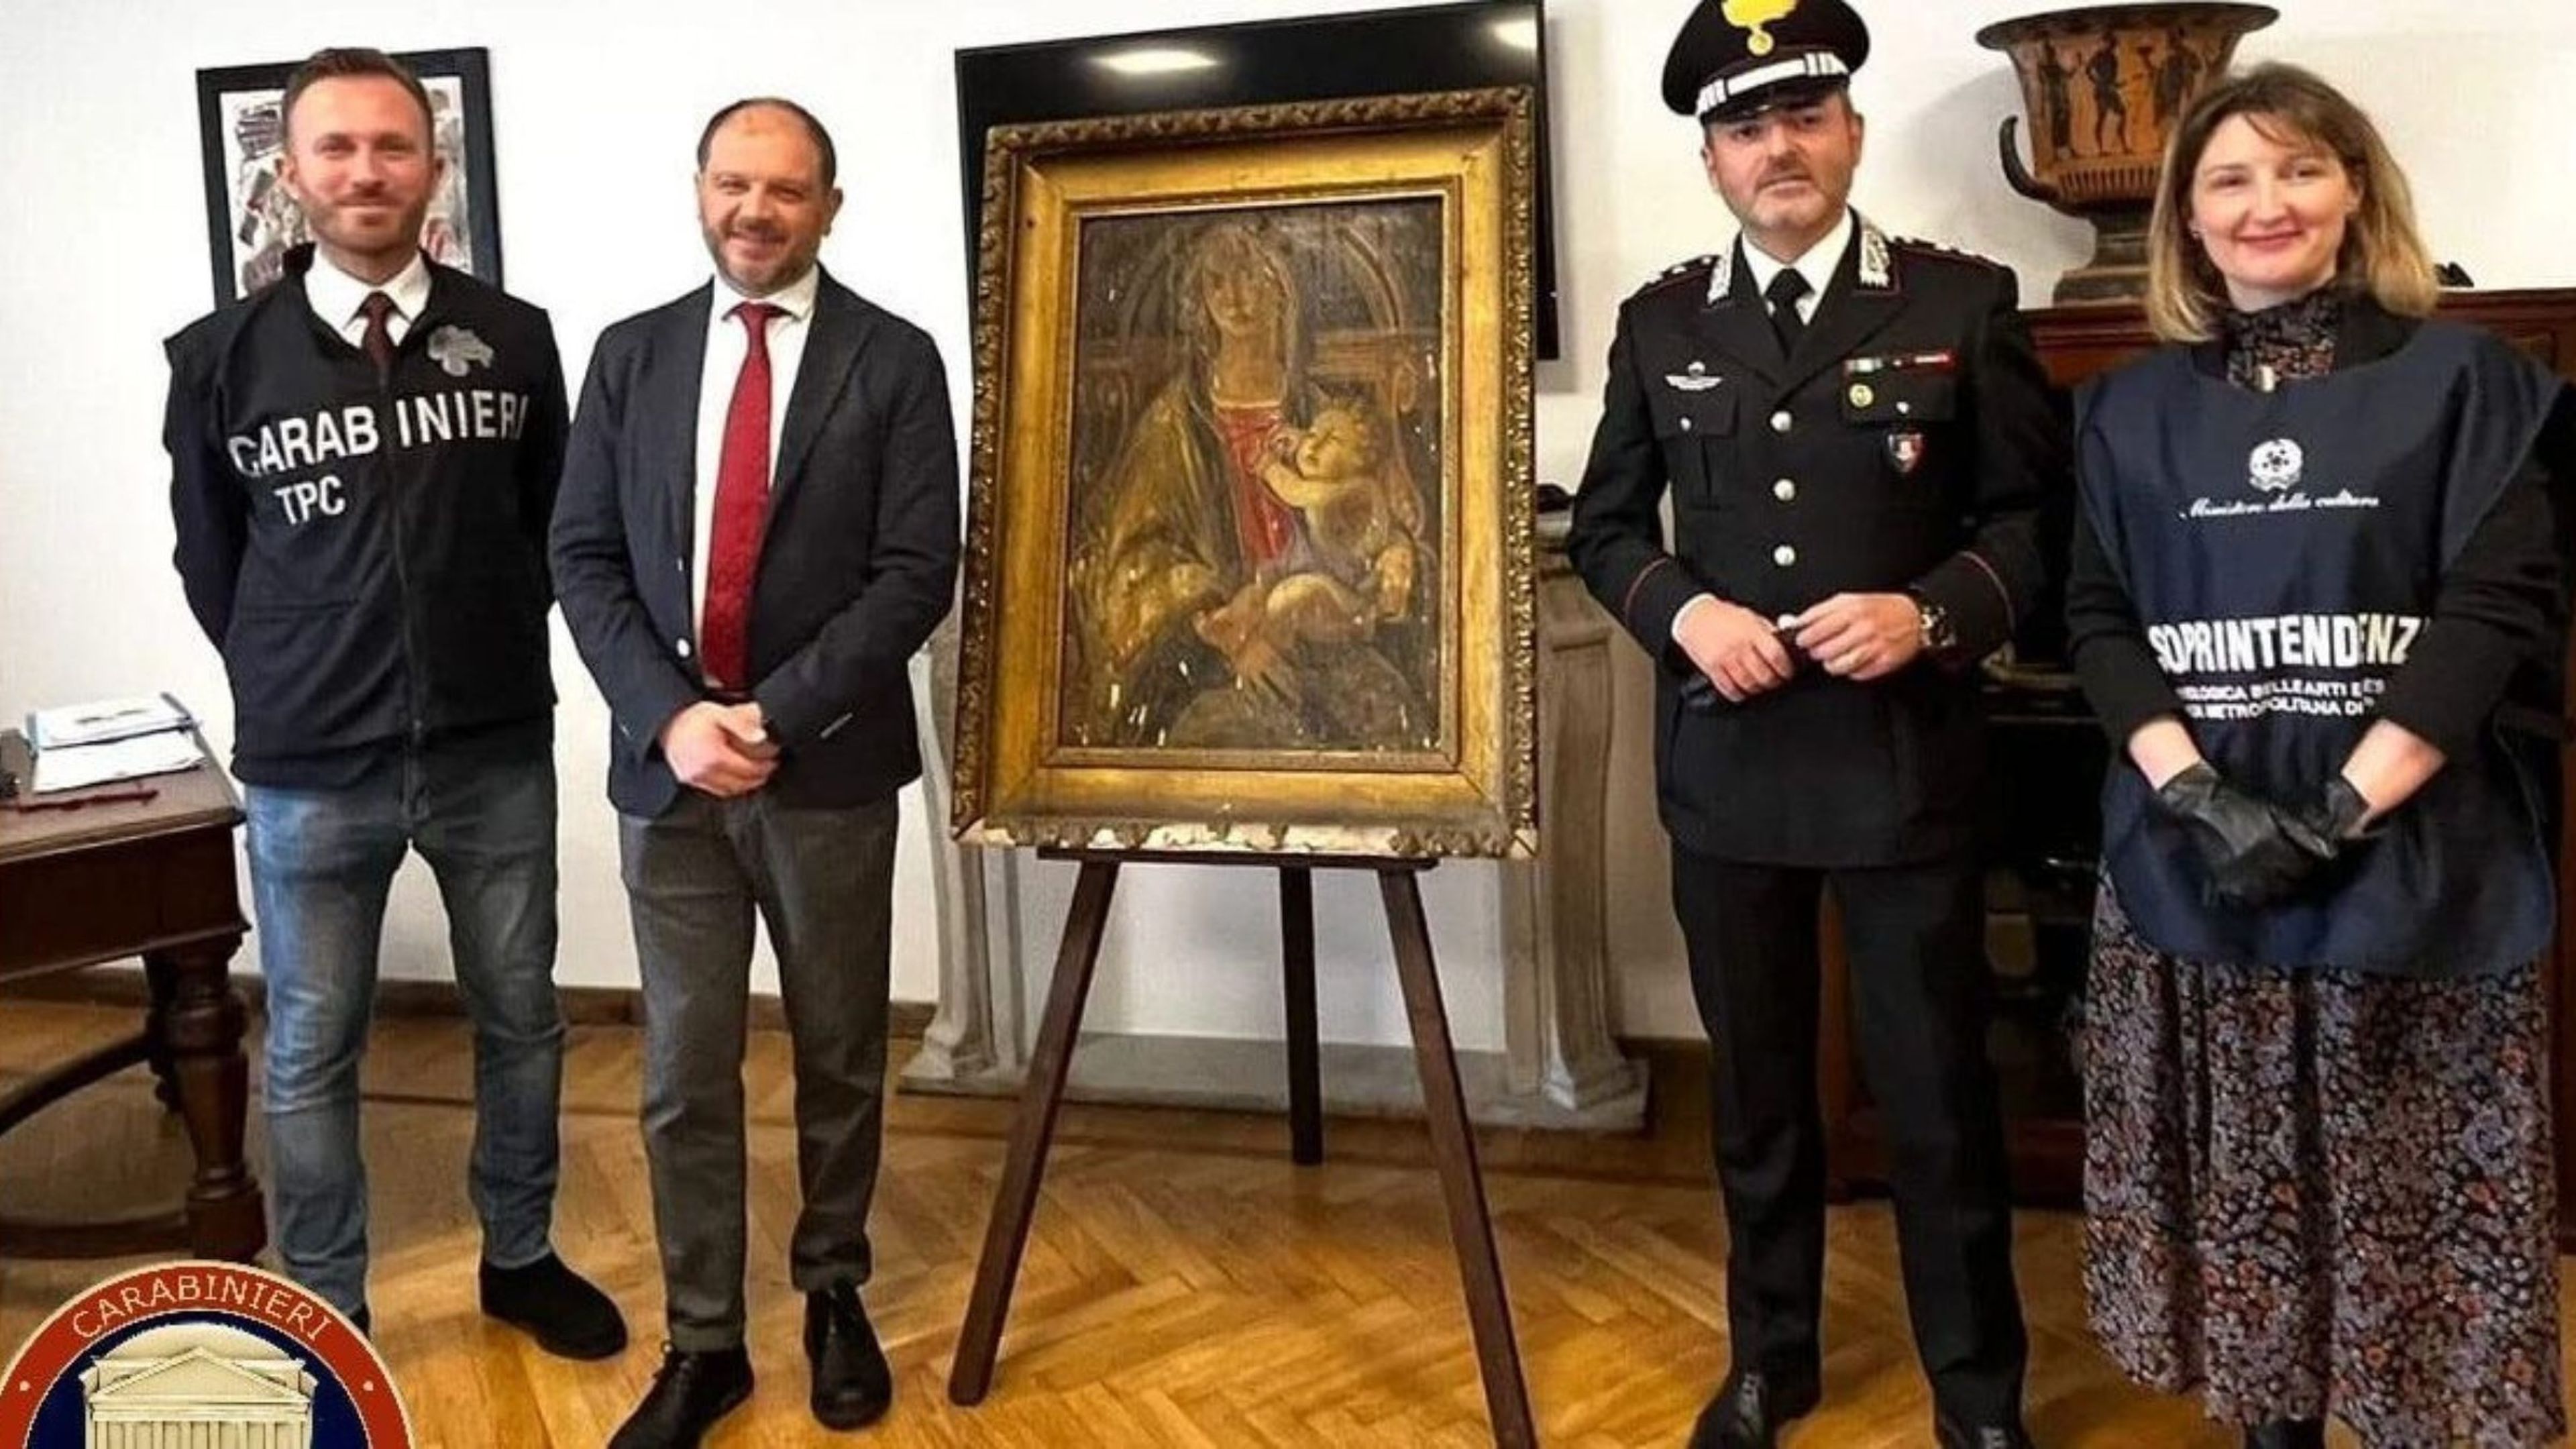 Los Carabinieri Tutela Patrimonio Culturale (Carabinieri para la Protección de Bienes Culturales).